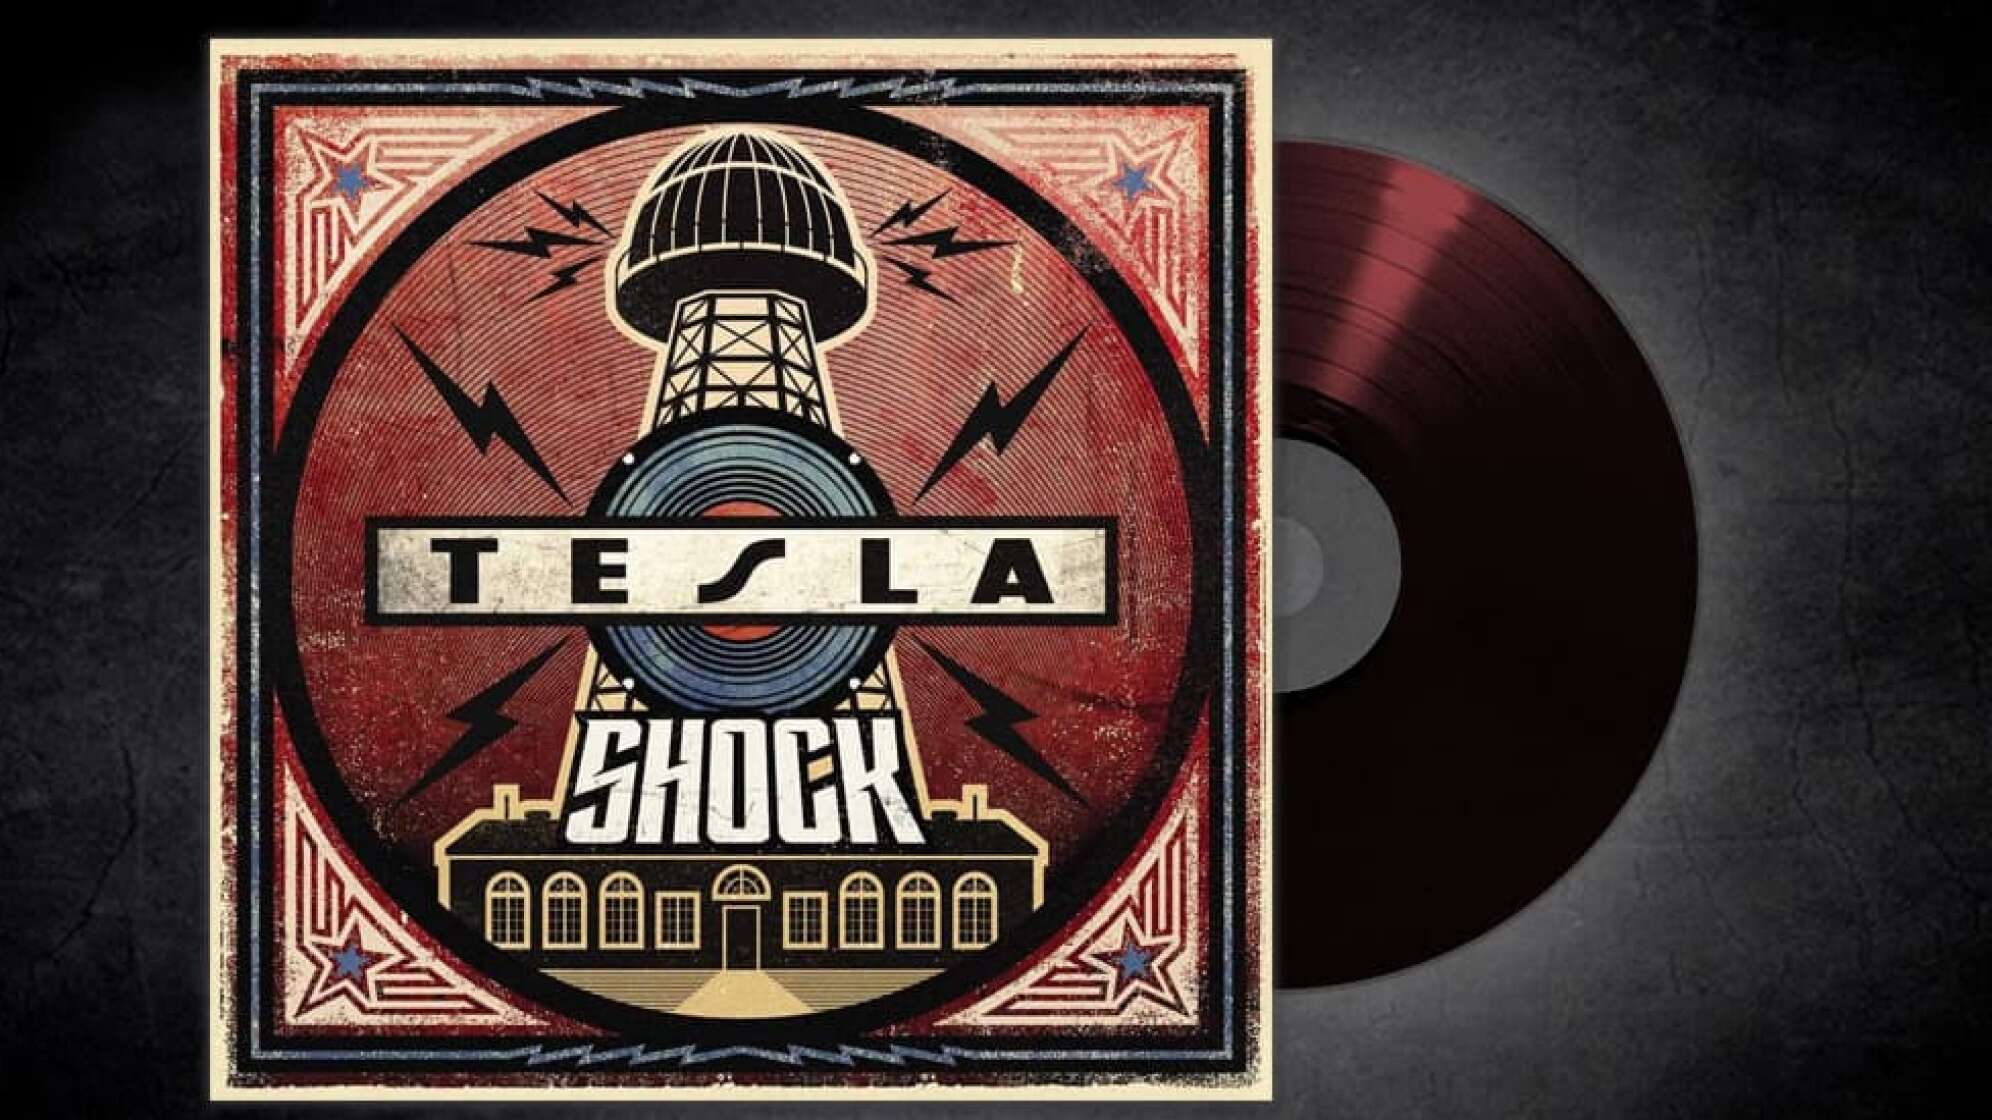 Albumcover von Tesla Shock